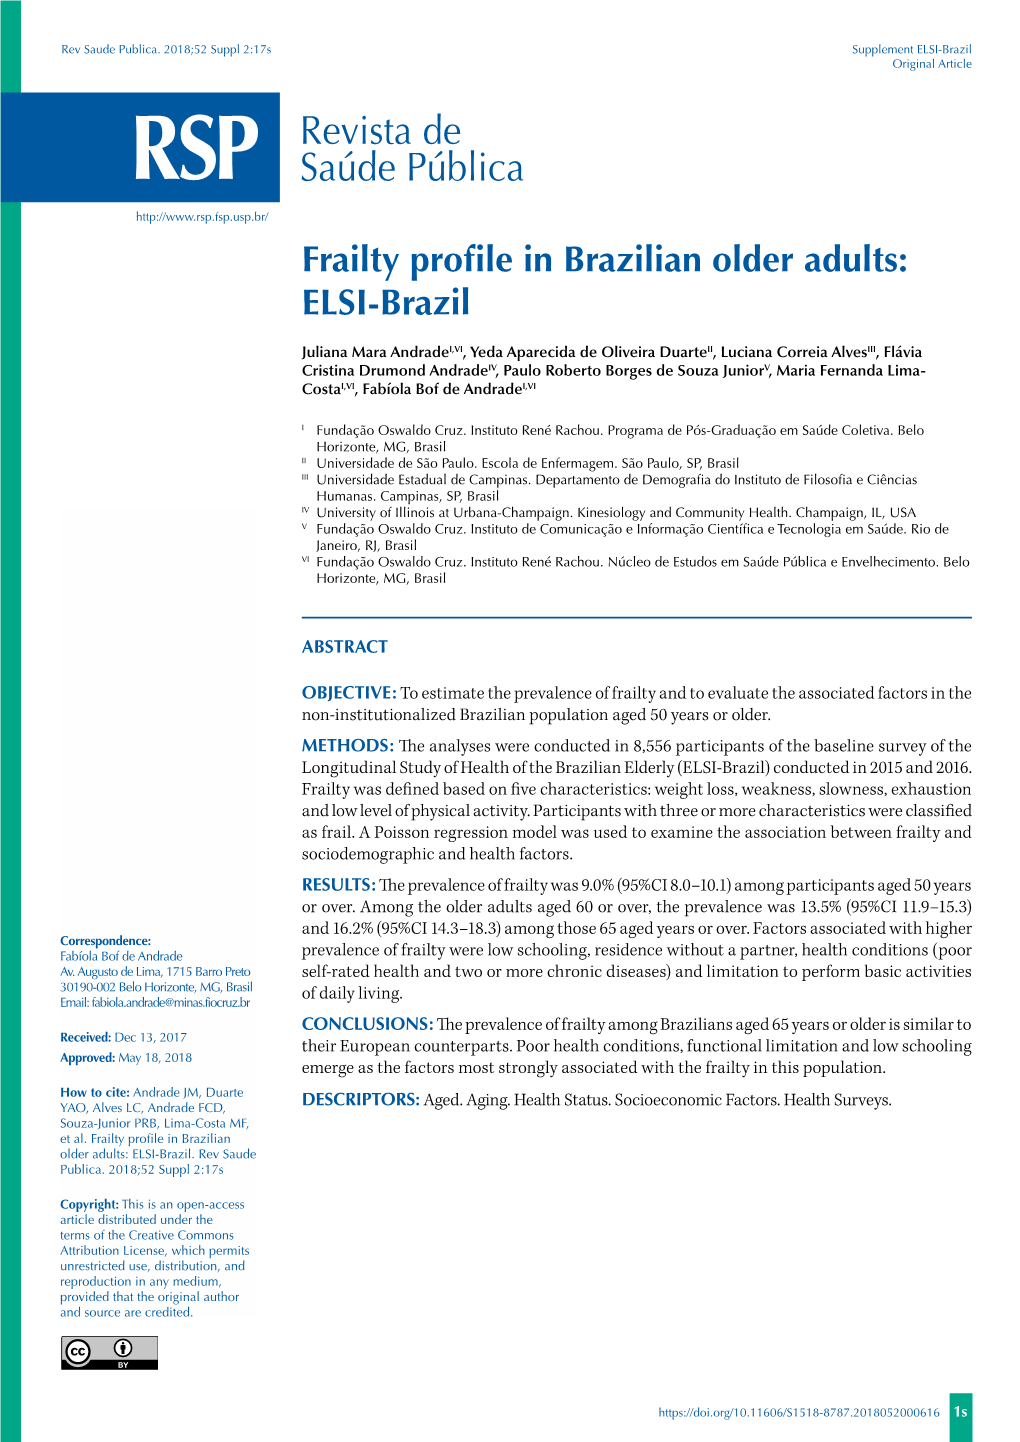 Frailty Profile in Brazilian Older Adults: ELSI-Brazil